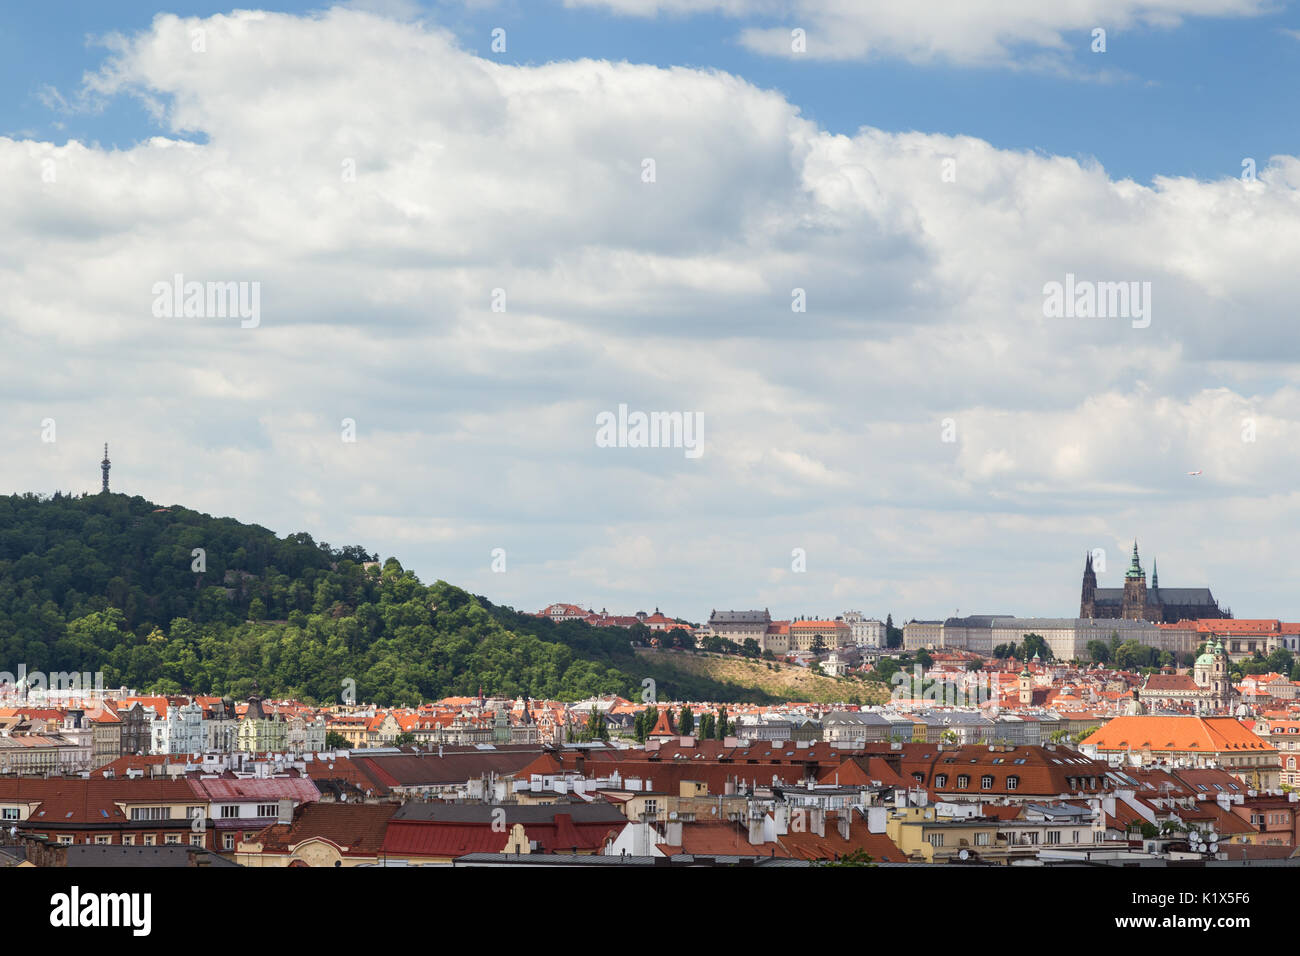 La colline de Petrin, à Prague (Hradcany) château et de vieux bâtiments à Prague, République tchèque, vu du fort de Vysehrad. Copiez l'espace. Banque D'Images